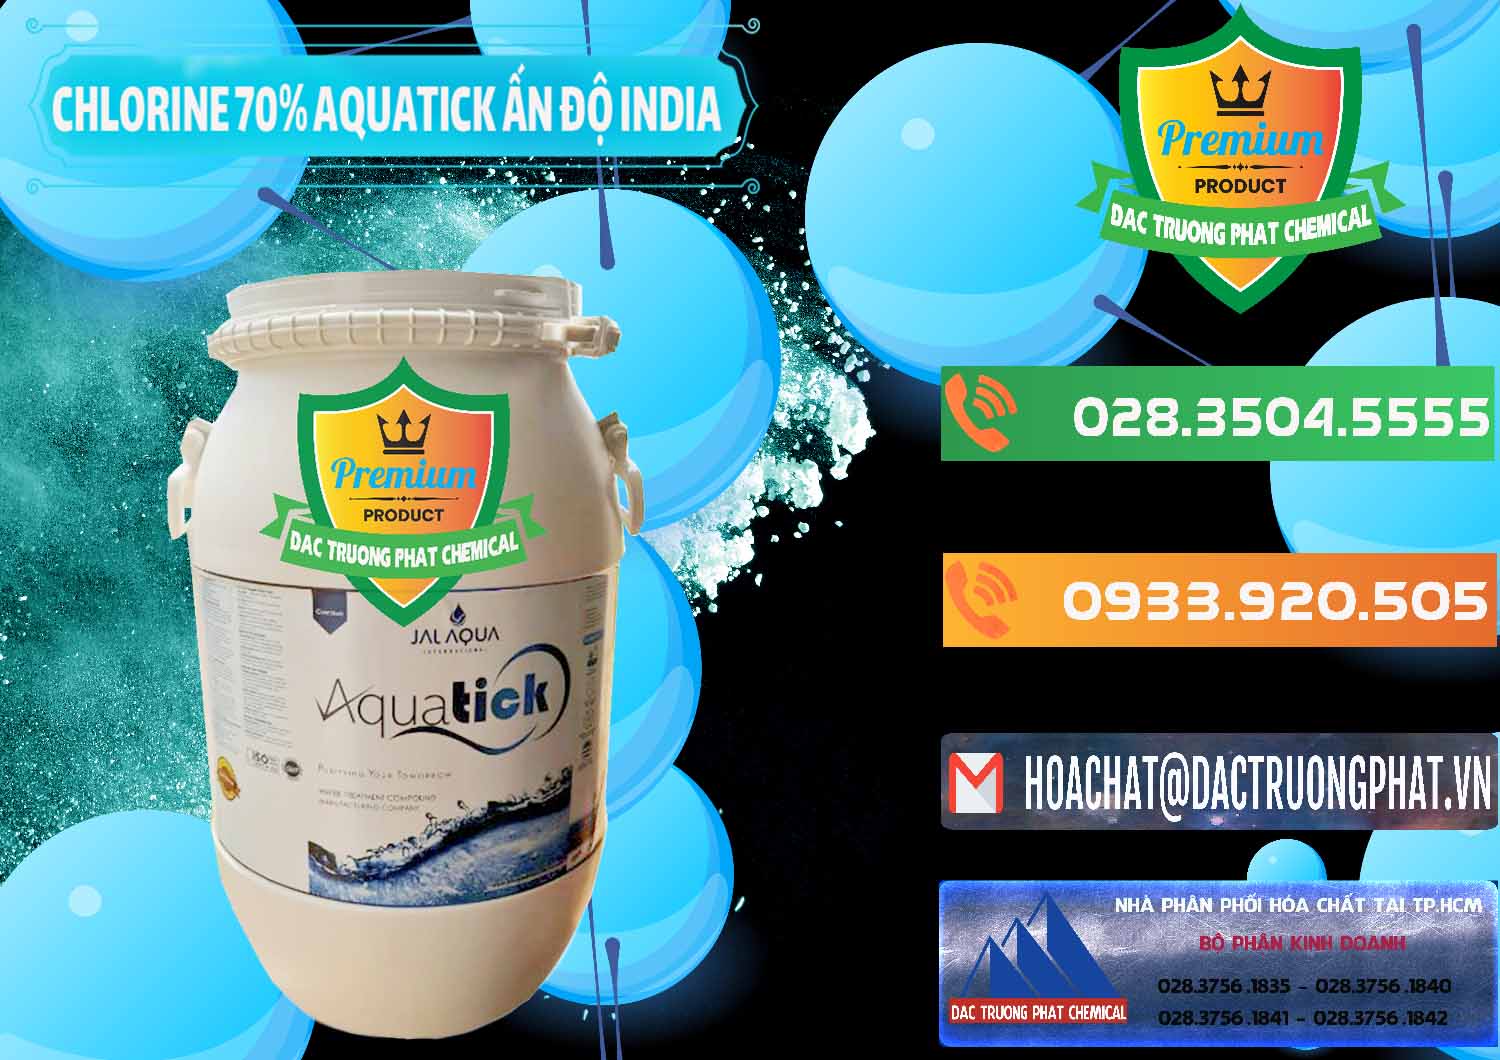 Cty bán ( cung cấp ) Chlorine – Clorin 70% Aquatick Jal Aqua Ấn Độ India - 0215 - Nơi bán & phân phối hóa chất tại TP.HCM - hoachatxulynuoc.com.vn